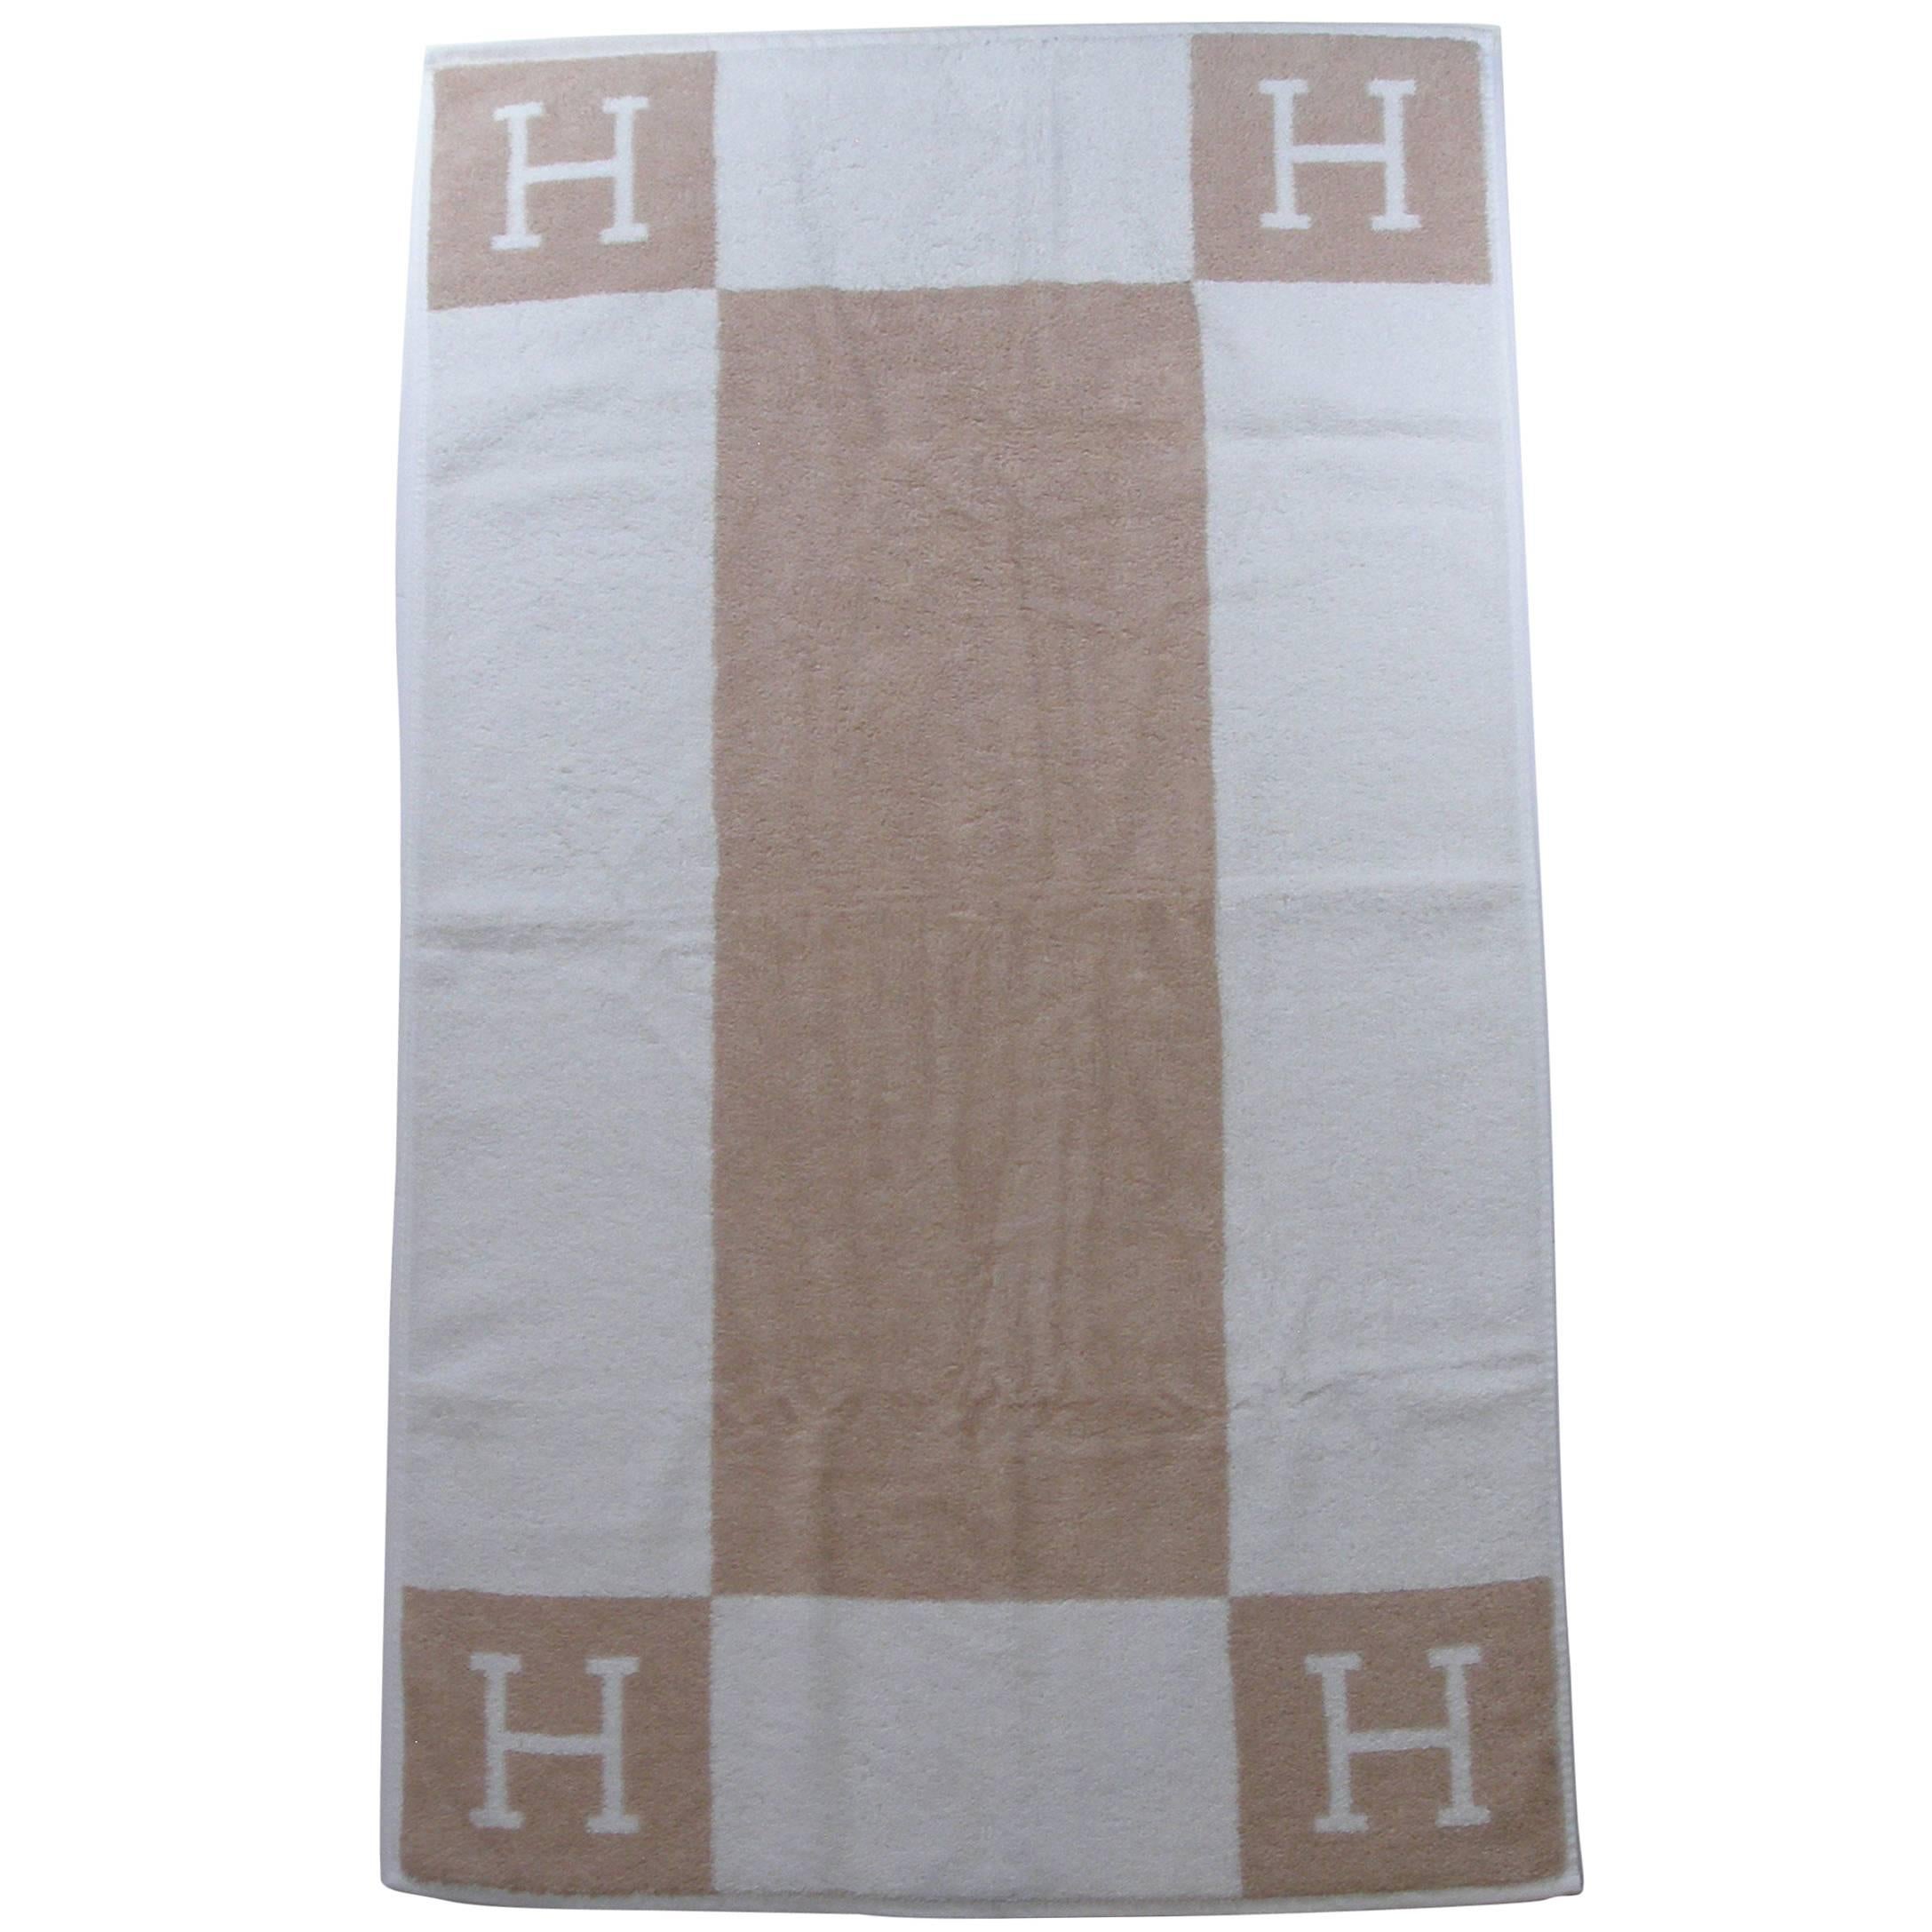 Rare Hermès Avalon Face Towel Créme and Noisette Color 99 cm x 57 / Brand New 